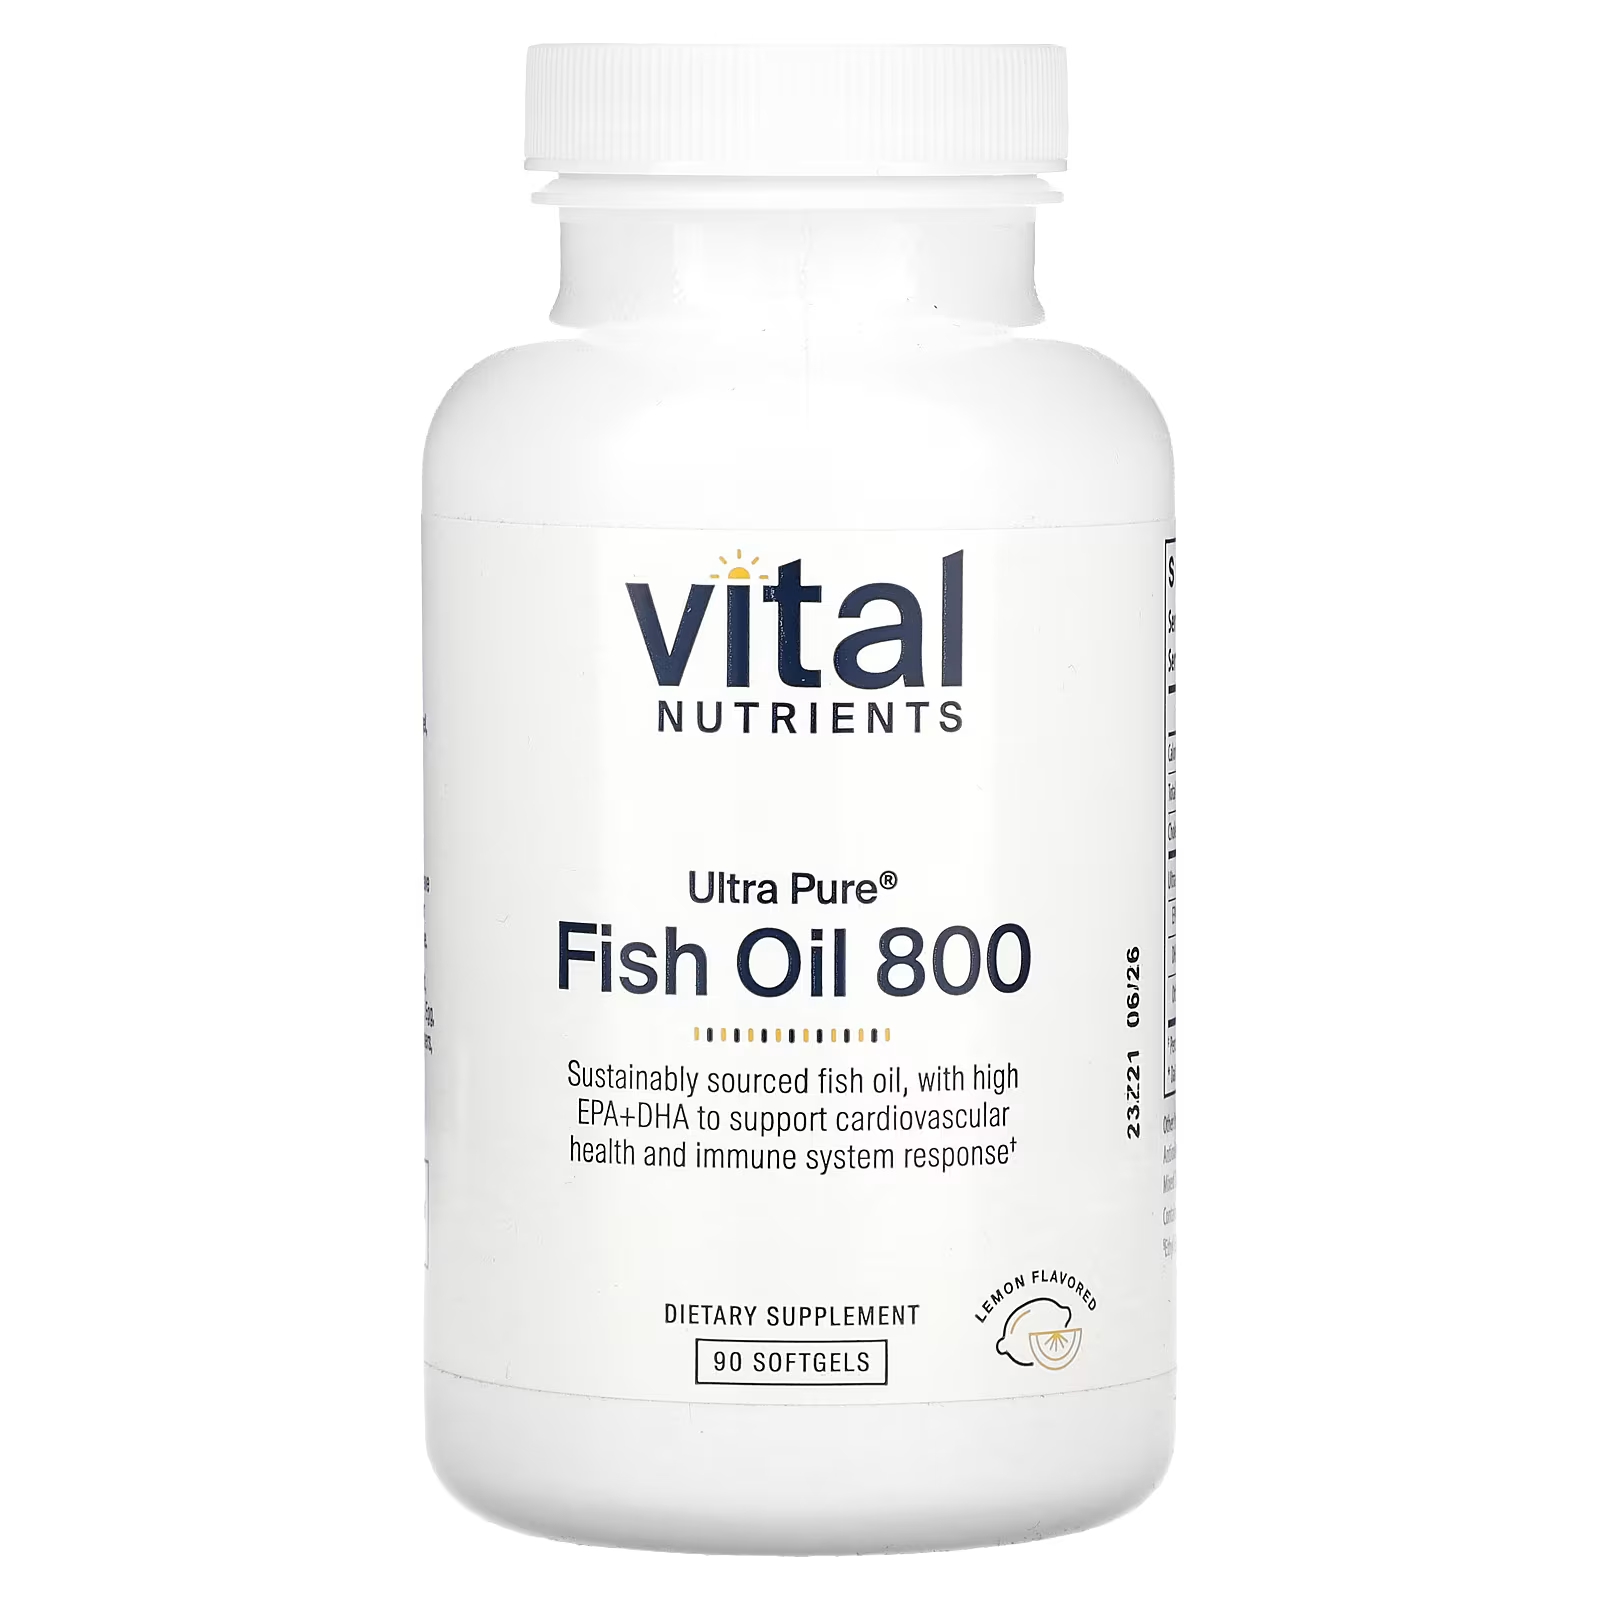 Пищевая добавка Vital Nutrients Ultra Pure Fish Oil 800 лимон, 90 мягких таблеток